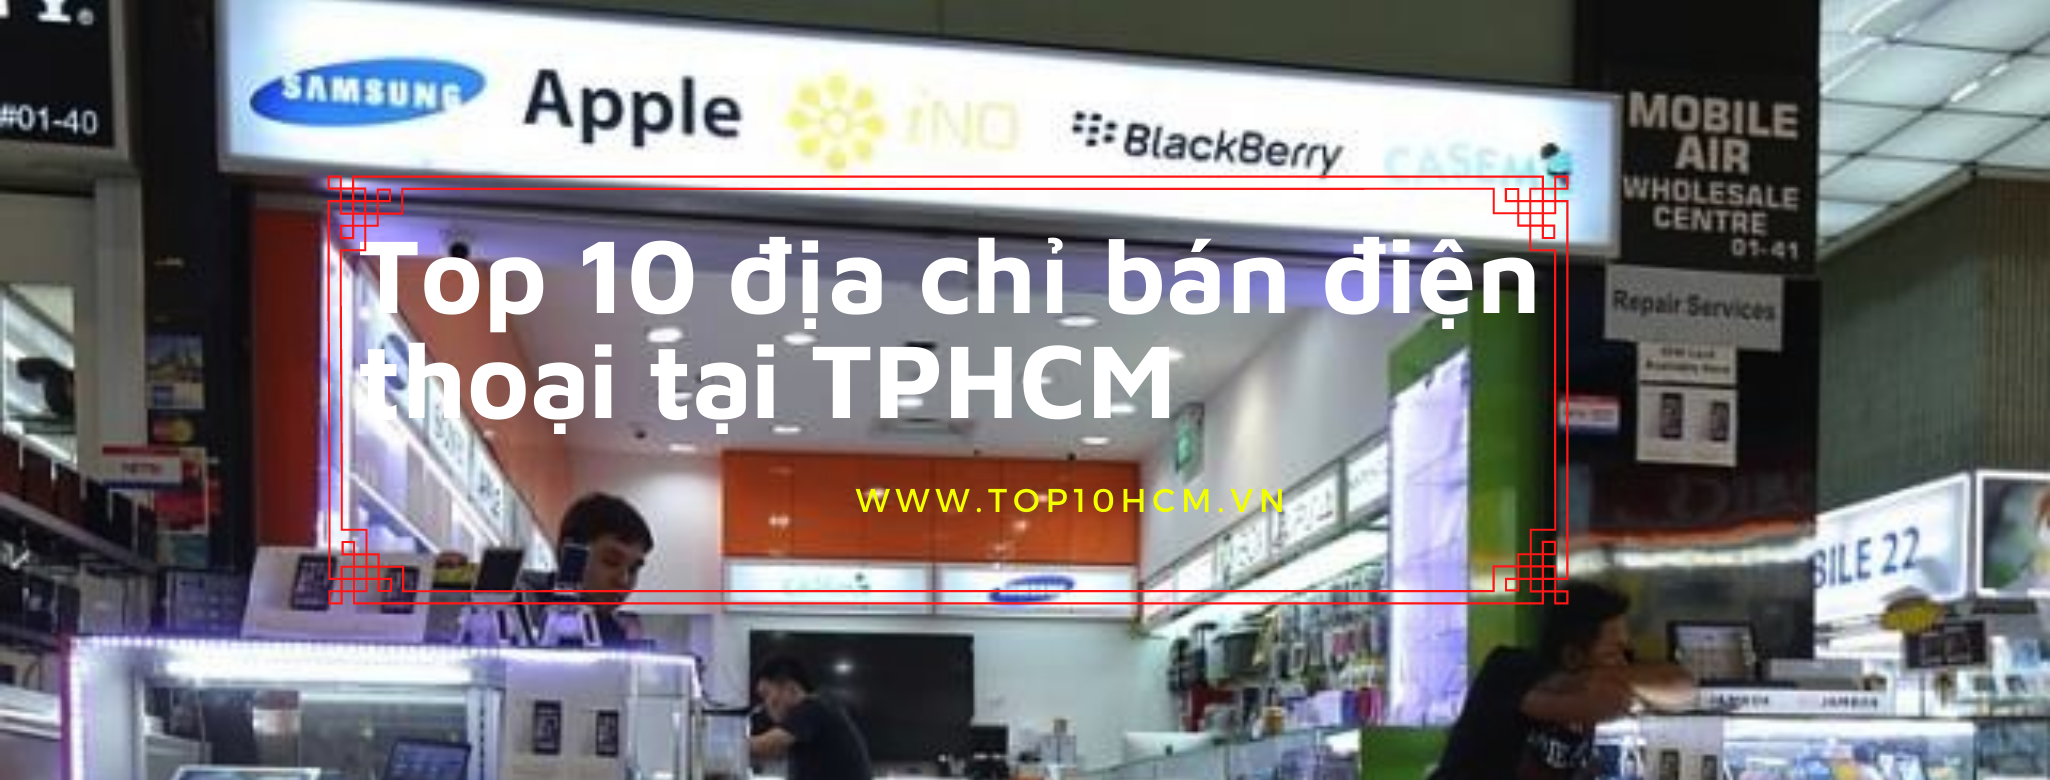 Top 10 địa chỉ cửa hàng bán điện thoại tại TPHCM